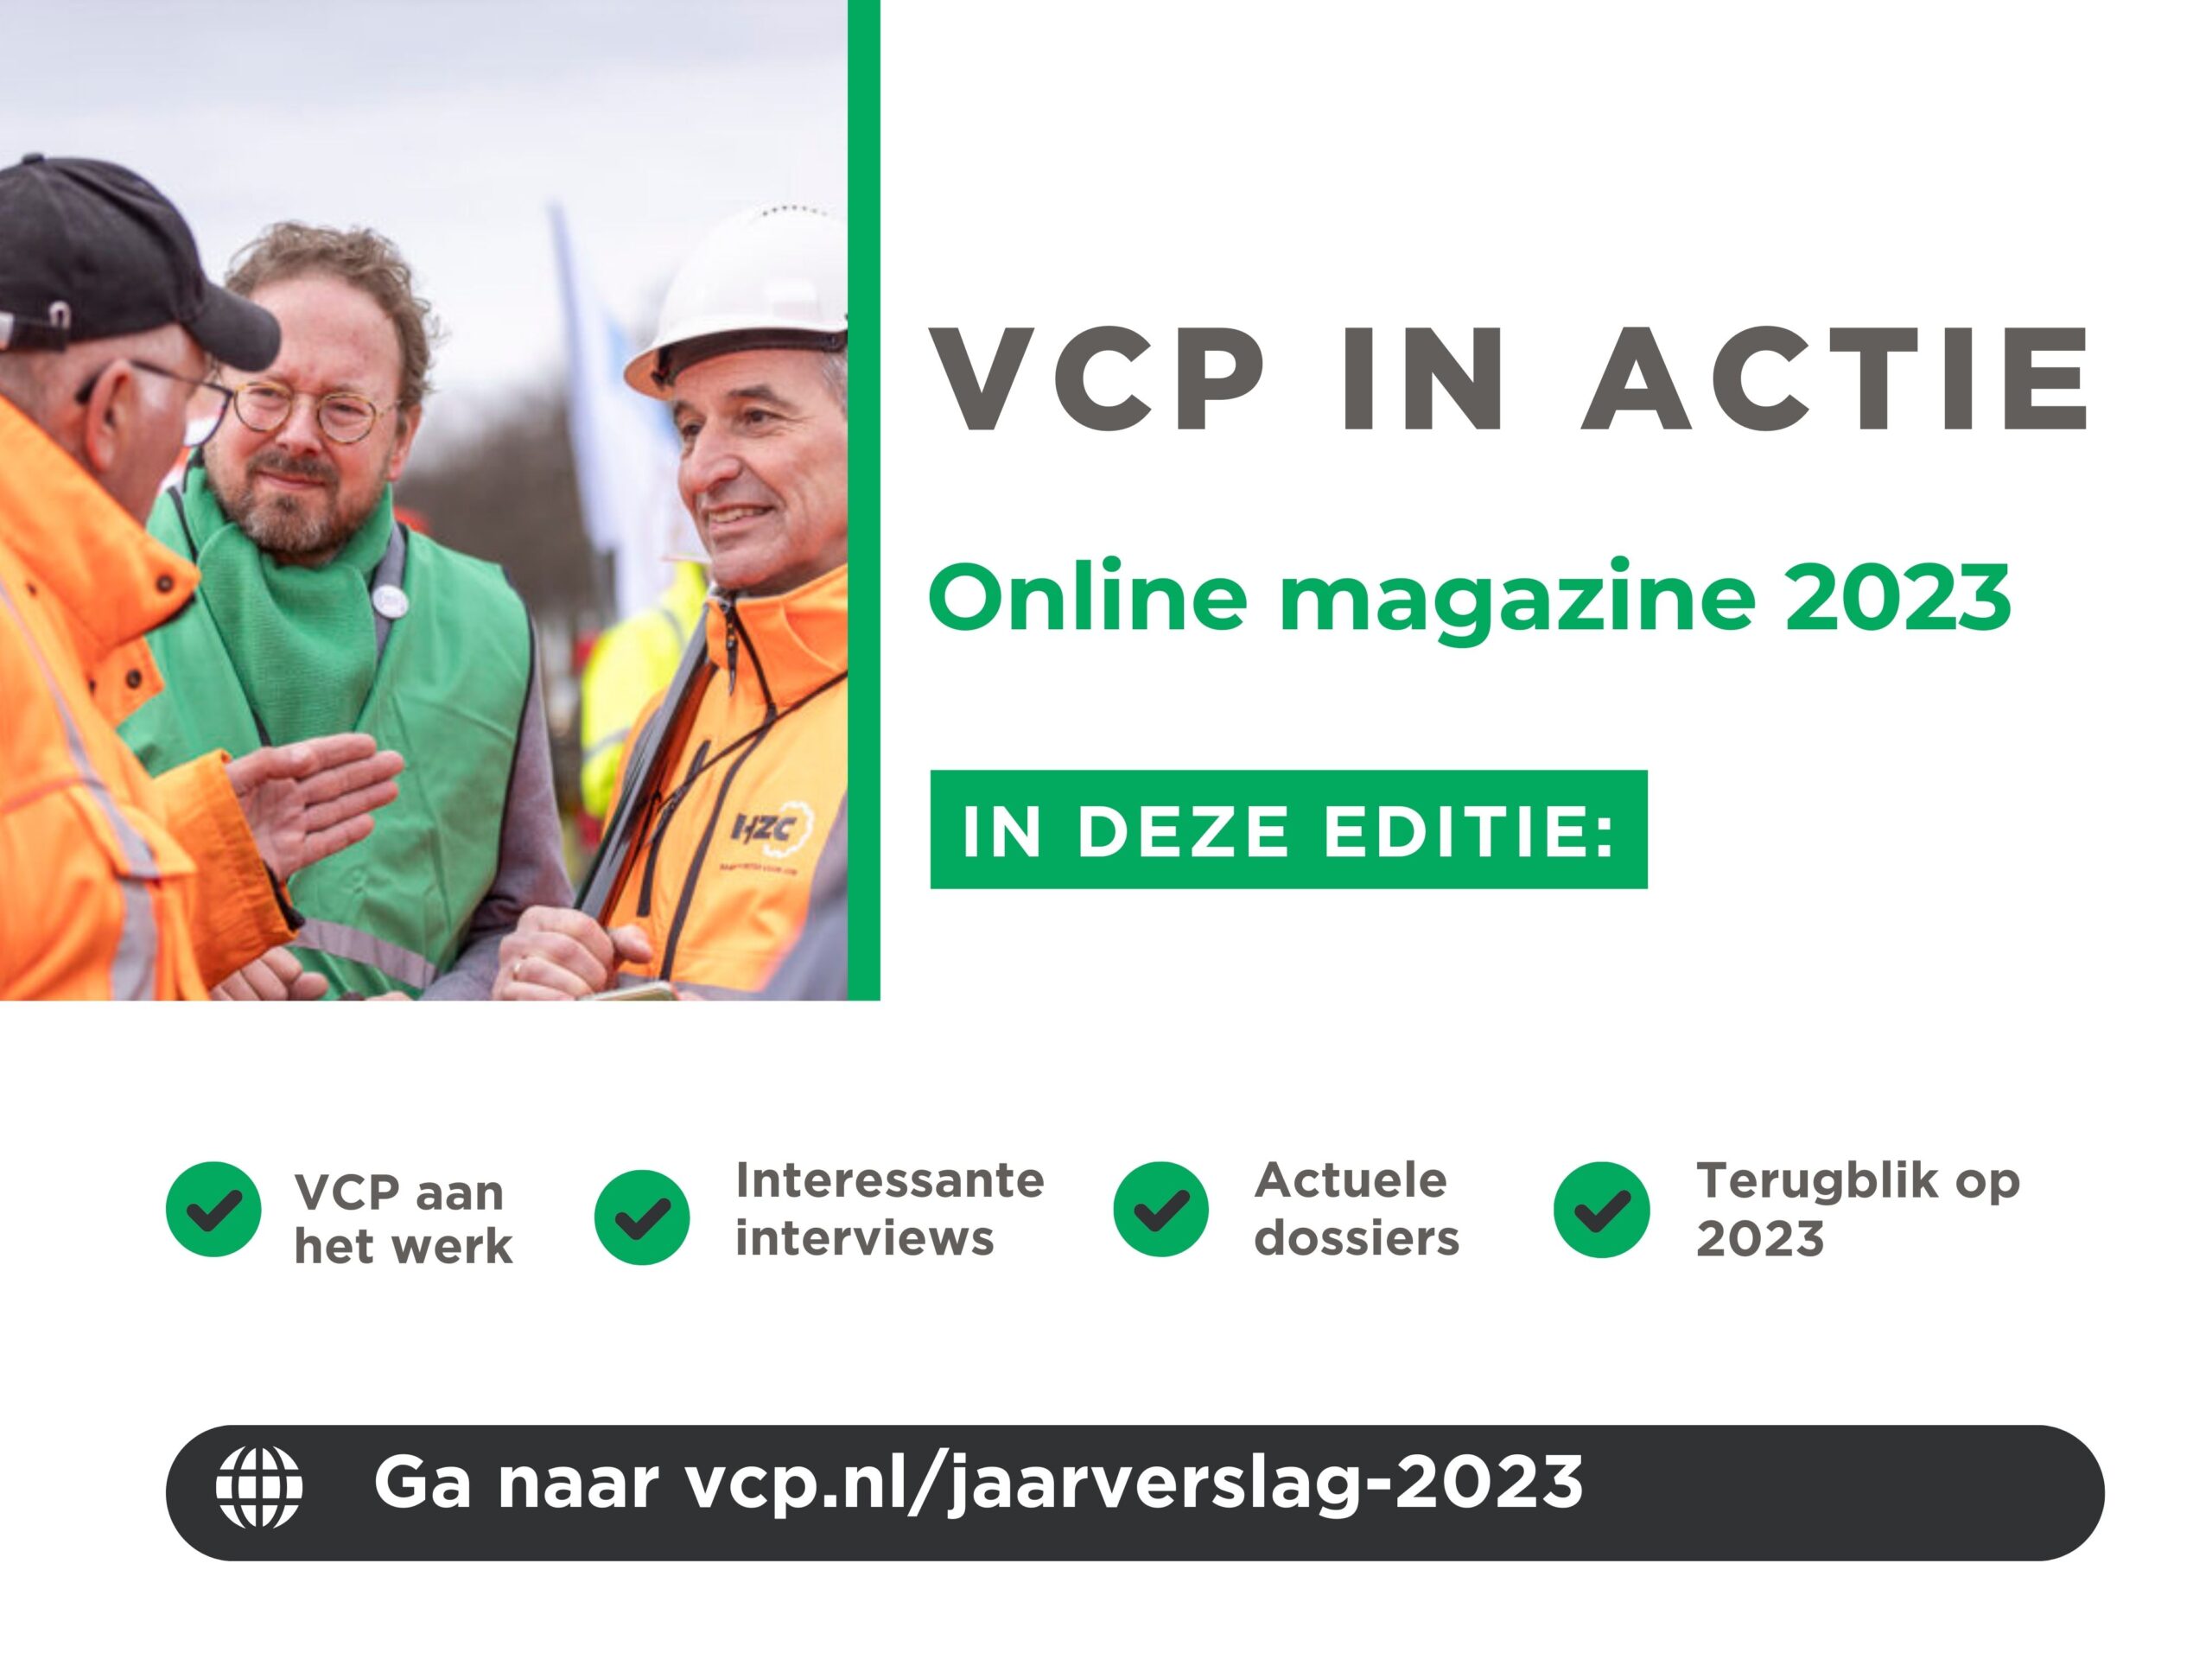 Het Online magazine ‘VCP in actie’ is nu uit